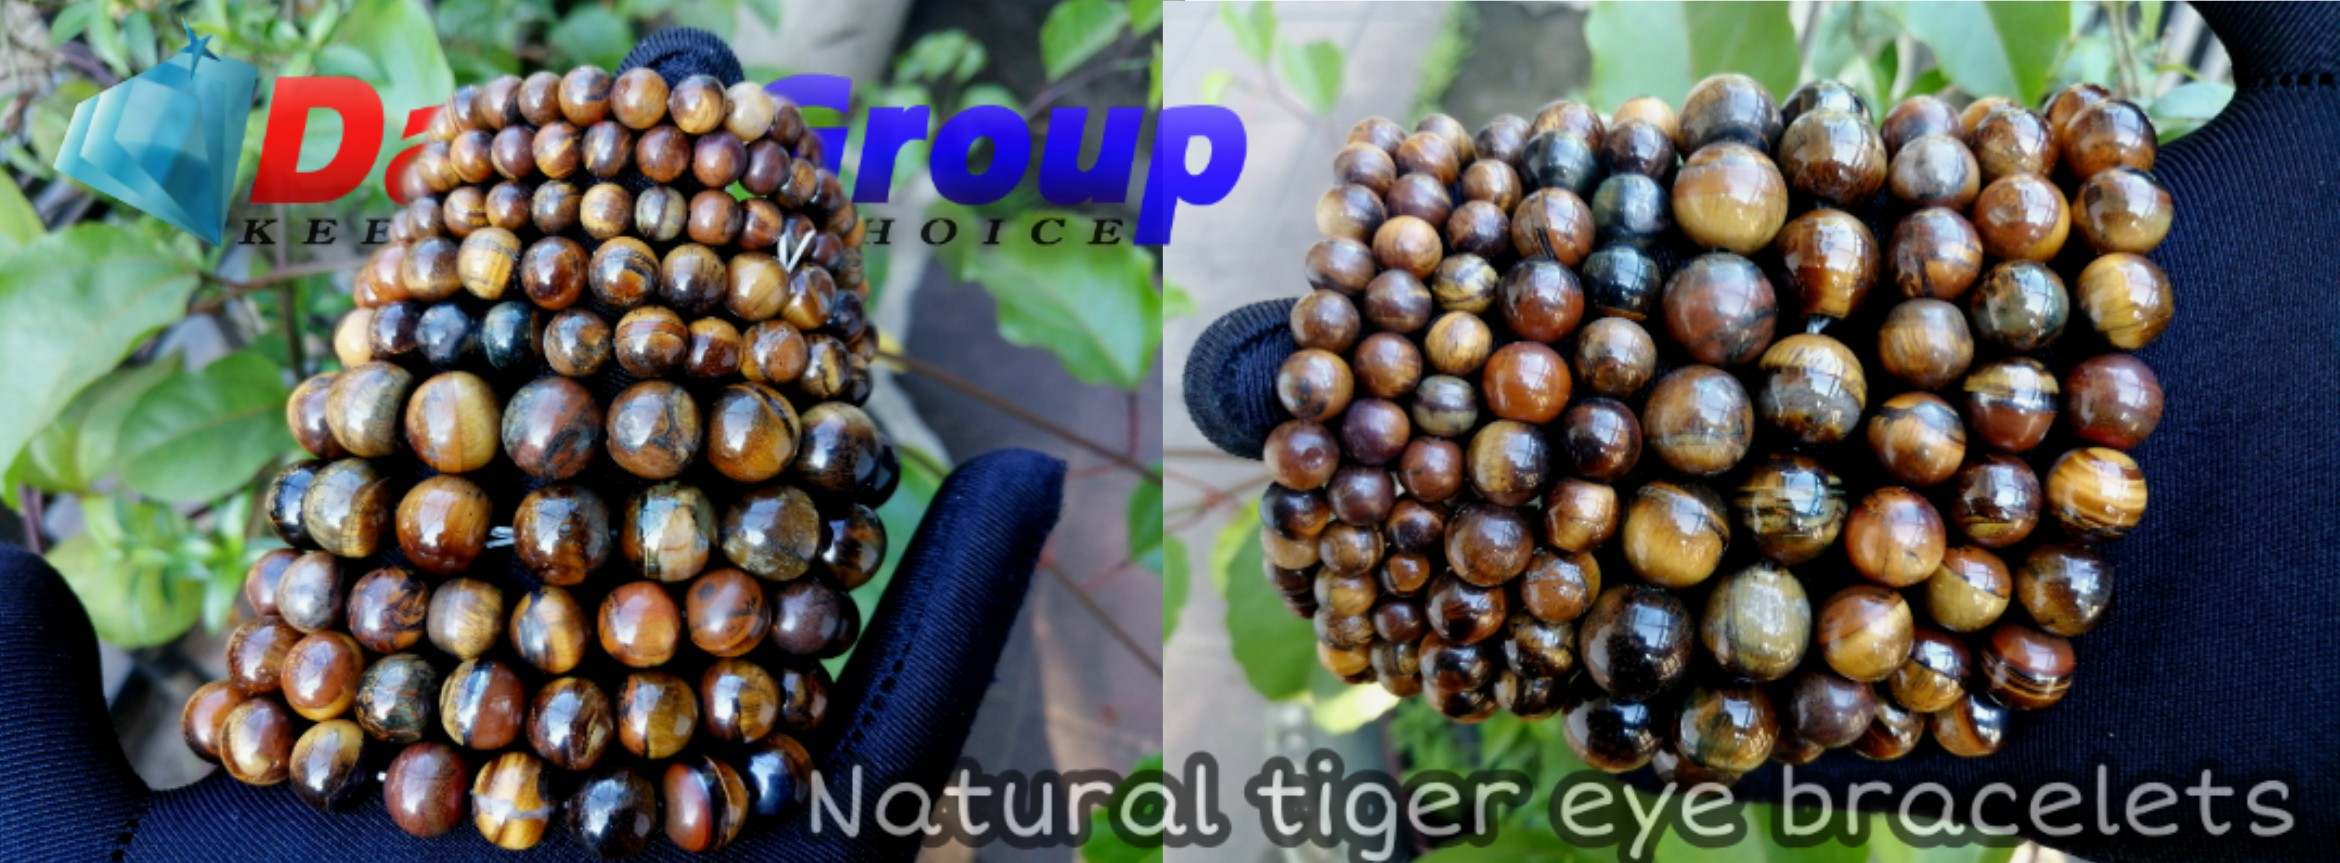 natural tiger eye braceletes